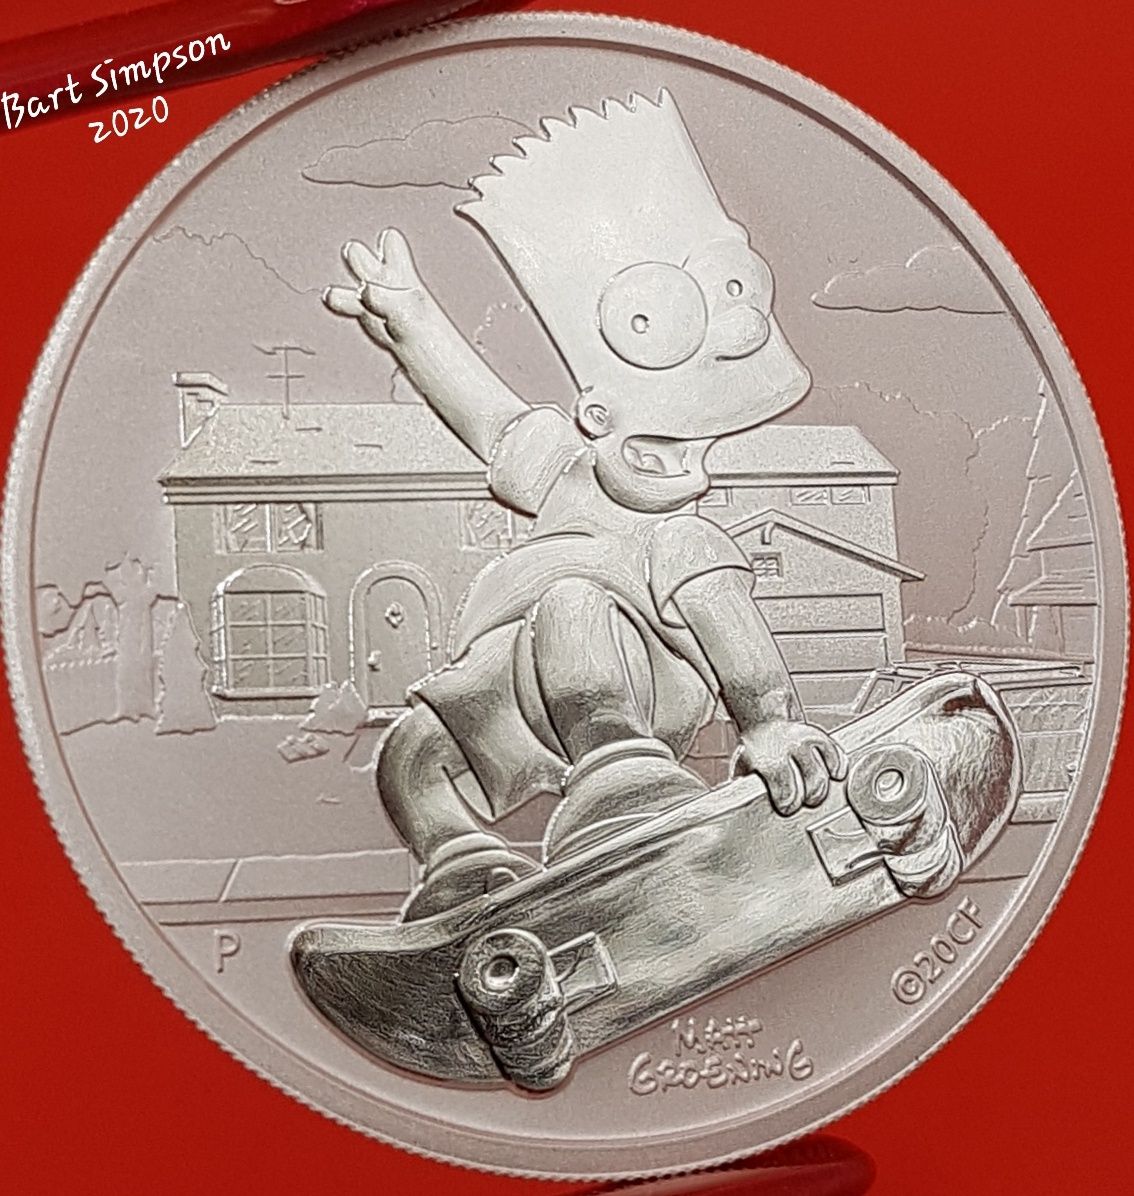 Naufragii Australiene Simpson monede lingou argint 999